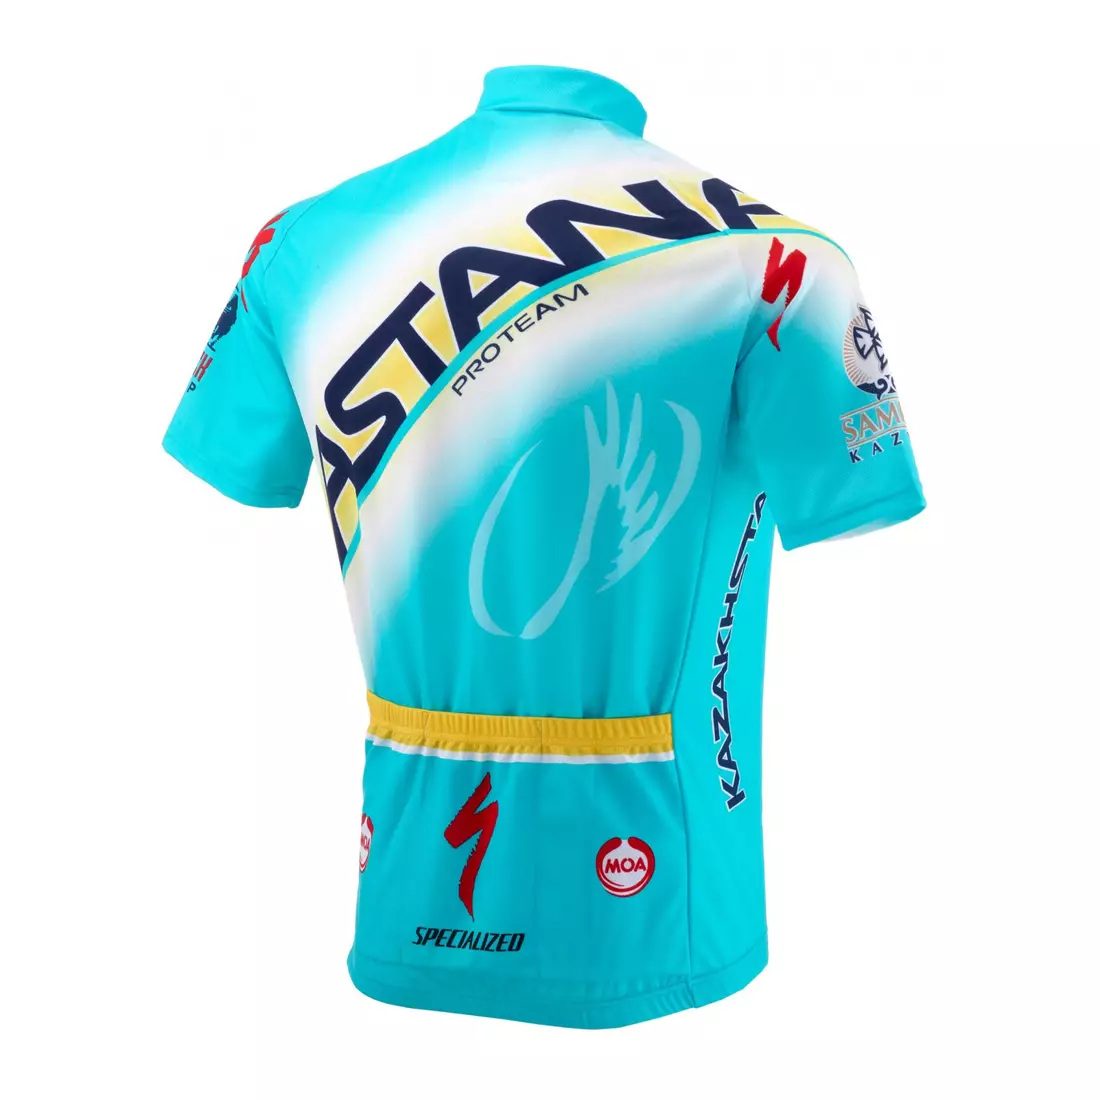 NALINI - TEAM ASTANA 2014 - cycling jersey